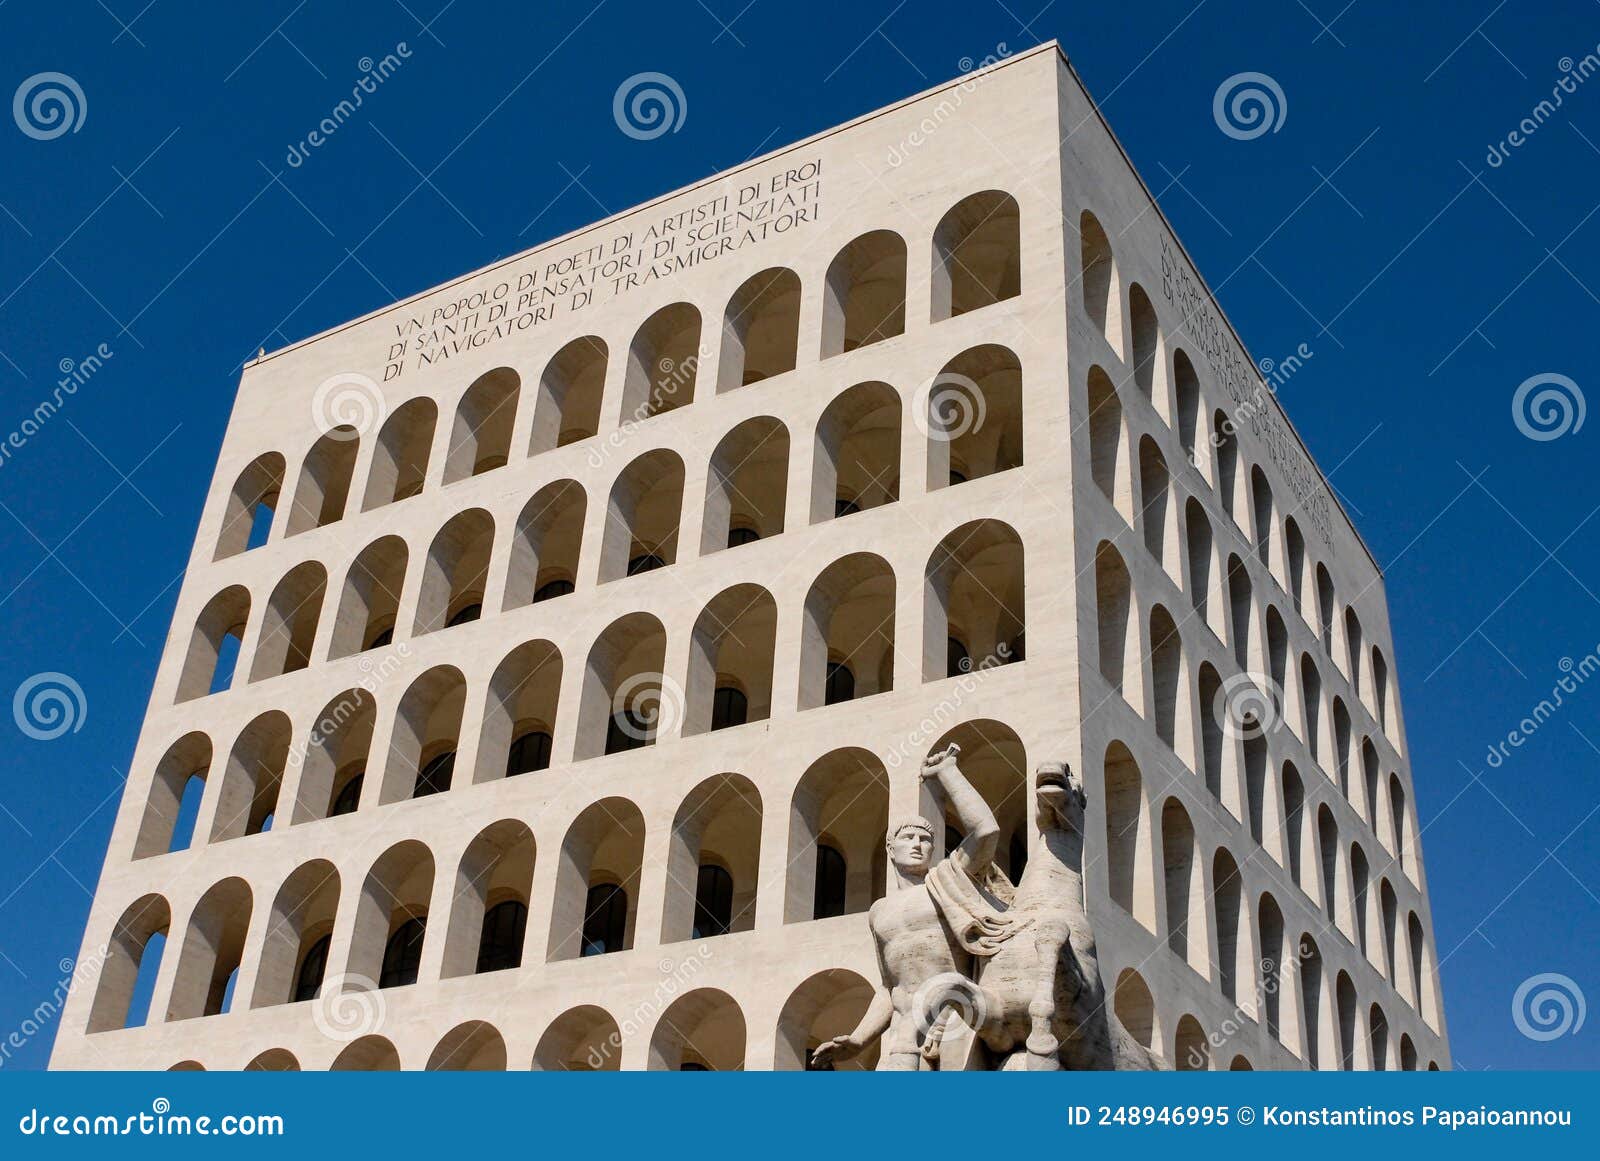 the palazzo della civiltÃÂ  italiana in eur district in rome, italy